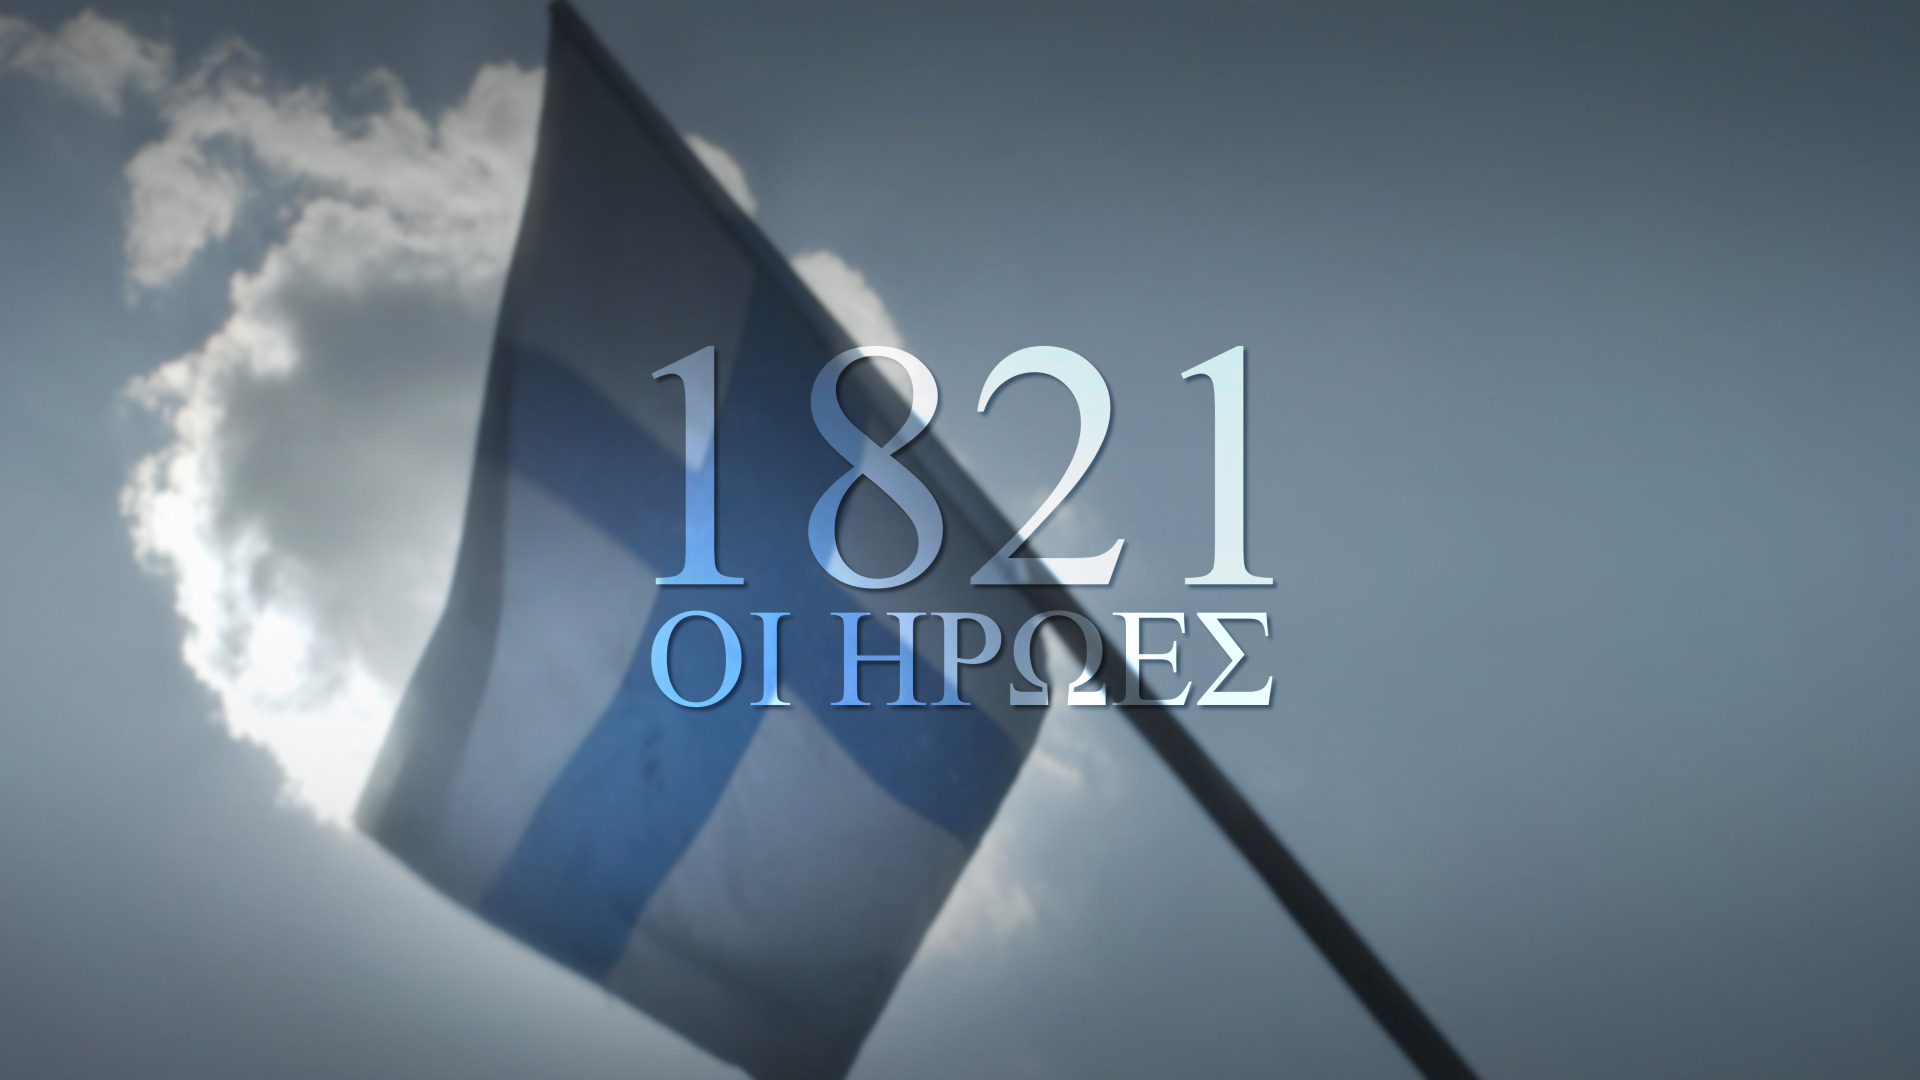 1821, Οι Ήρωες: Η νέα παραγωγή του ΣΚΑΪ για τον εορτασμό των 200 ετών από την Ελληνική Επανάσταση